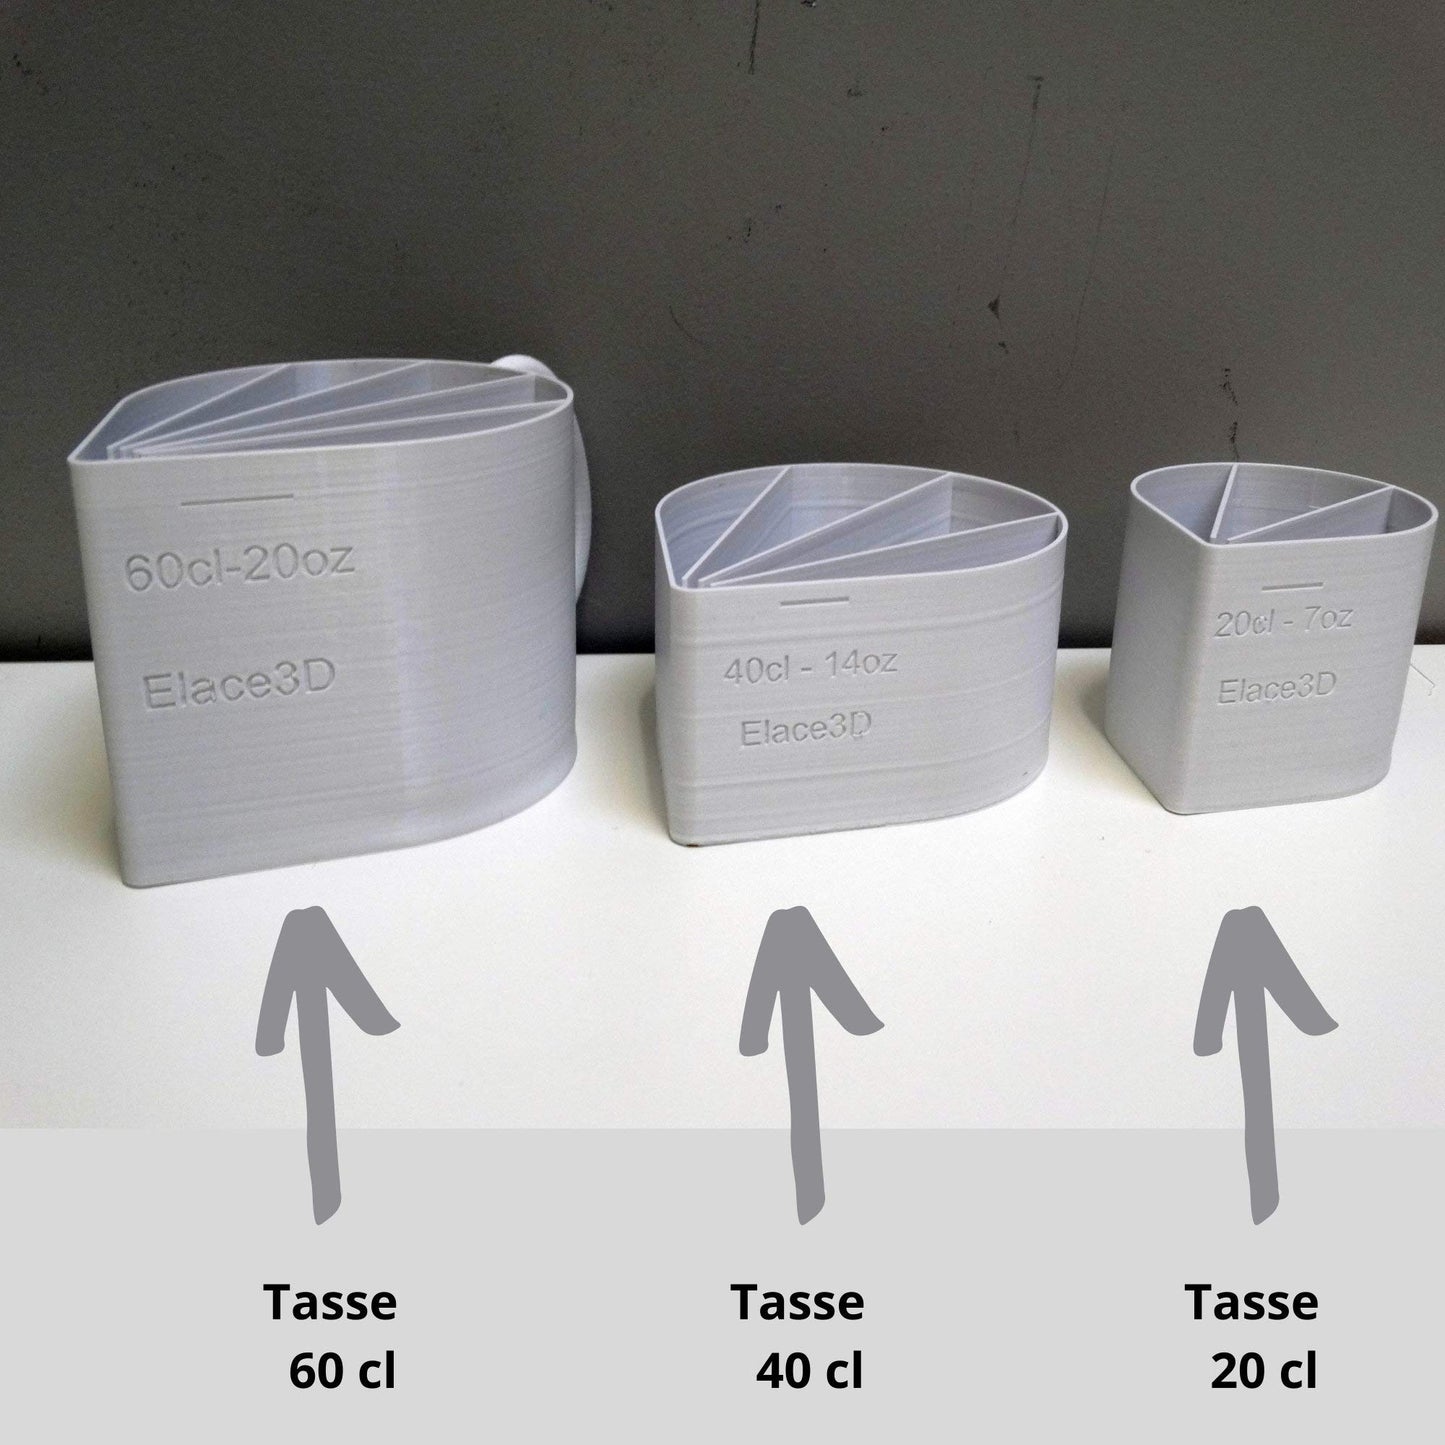 ELACE Tasse Cup de 60cl 20oz - 2 canaux pour Peinture Acrylique Liquide Fluide, Technique Acrylique Pouring ou coulée - Made in France DIY